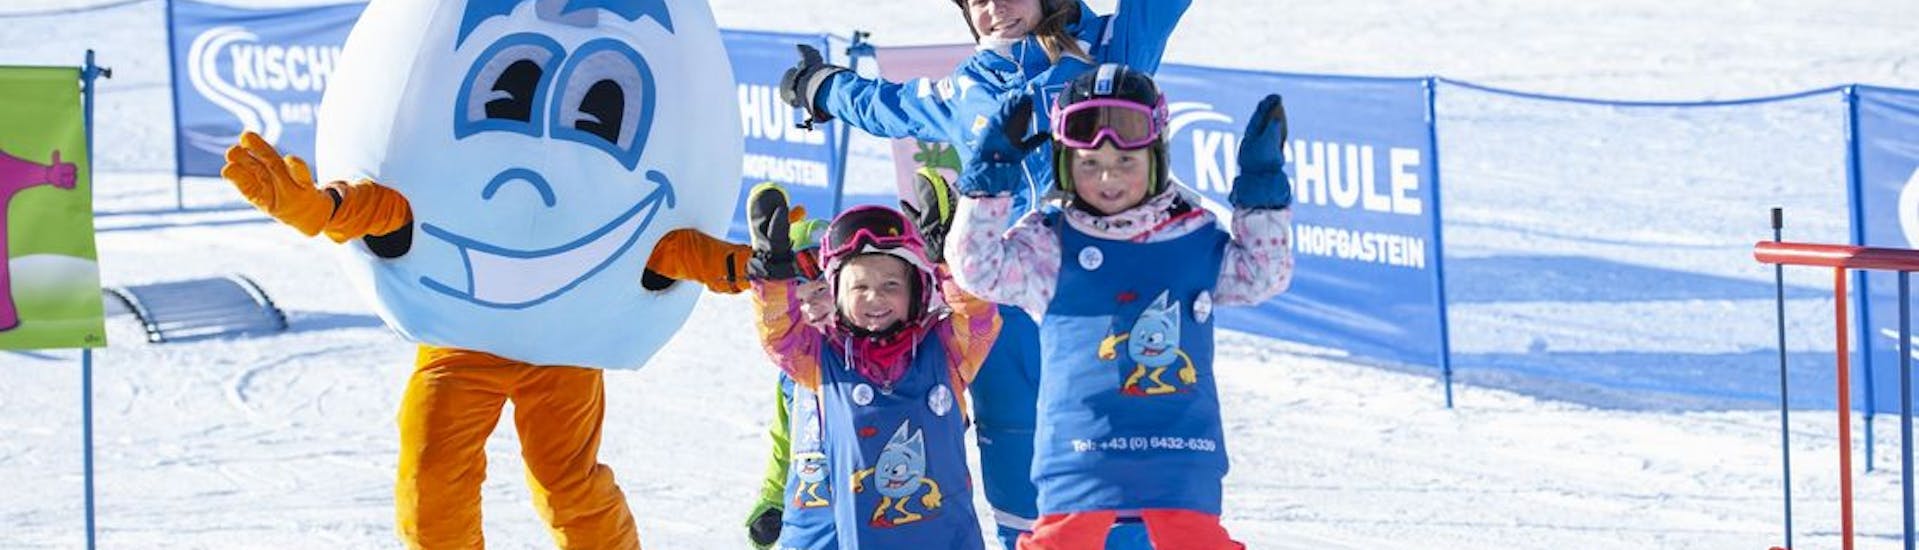 Clases de esquí para niños a partir de 6 años para avanzados con Skischule Bad Hofgastein.